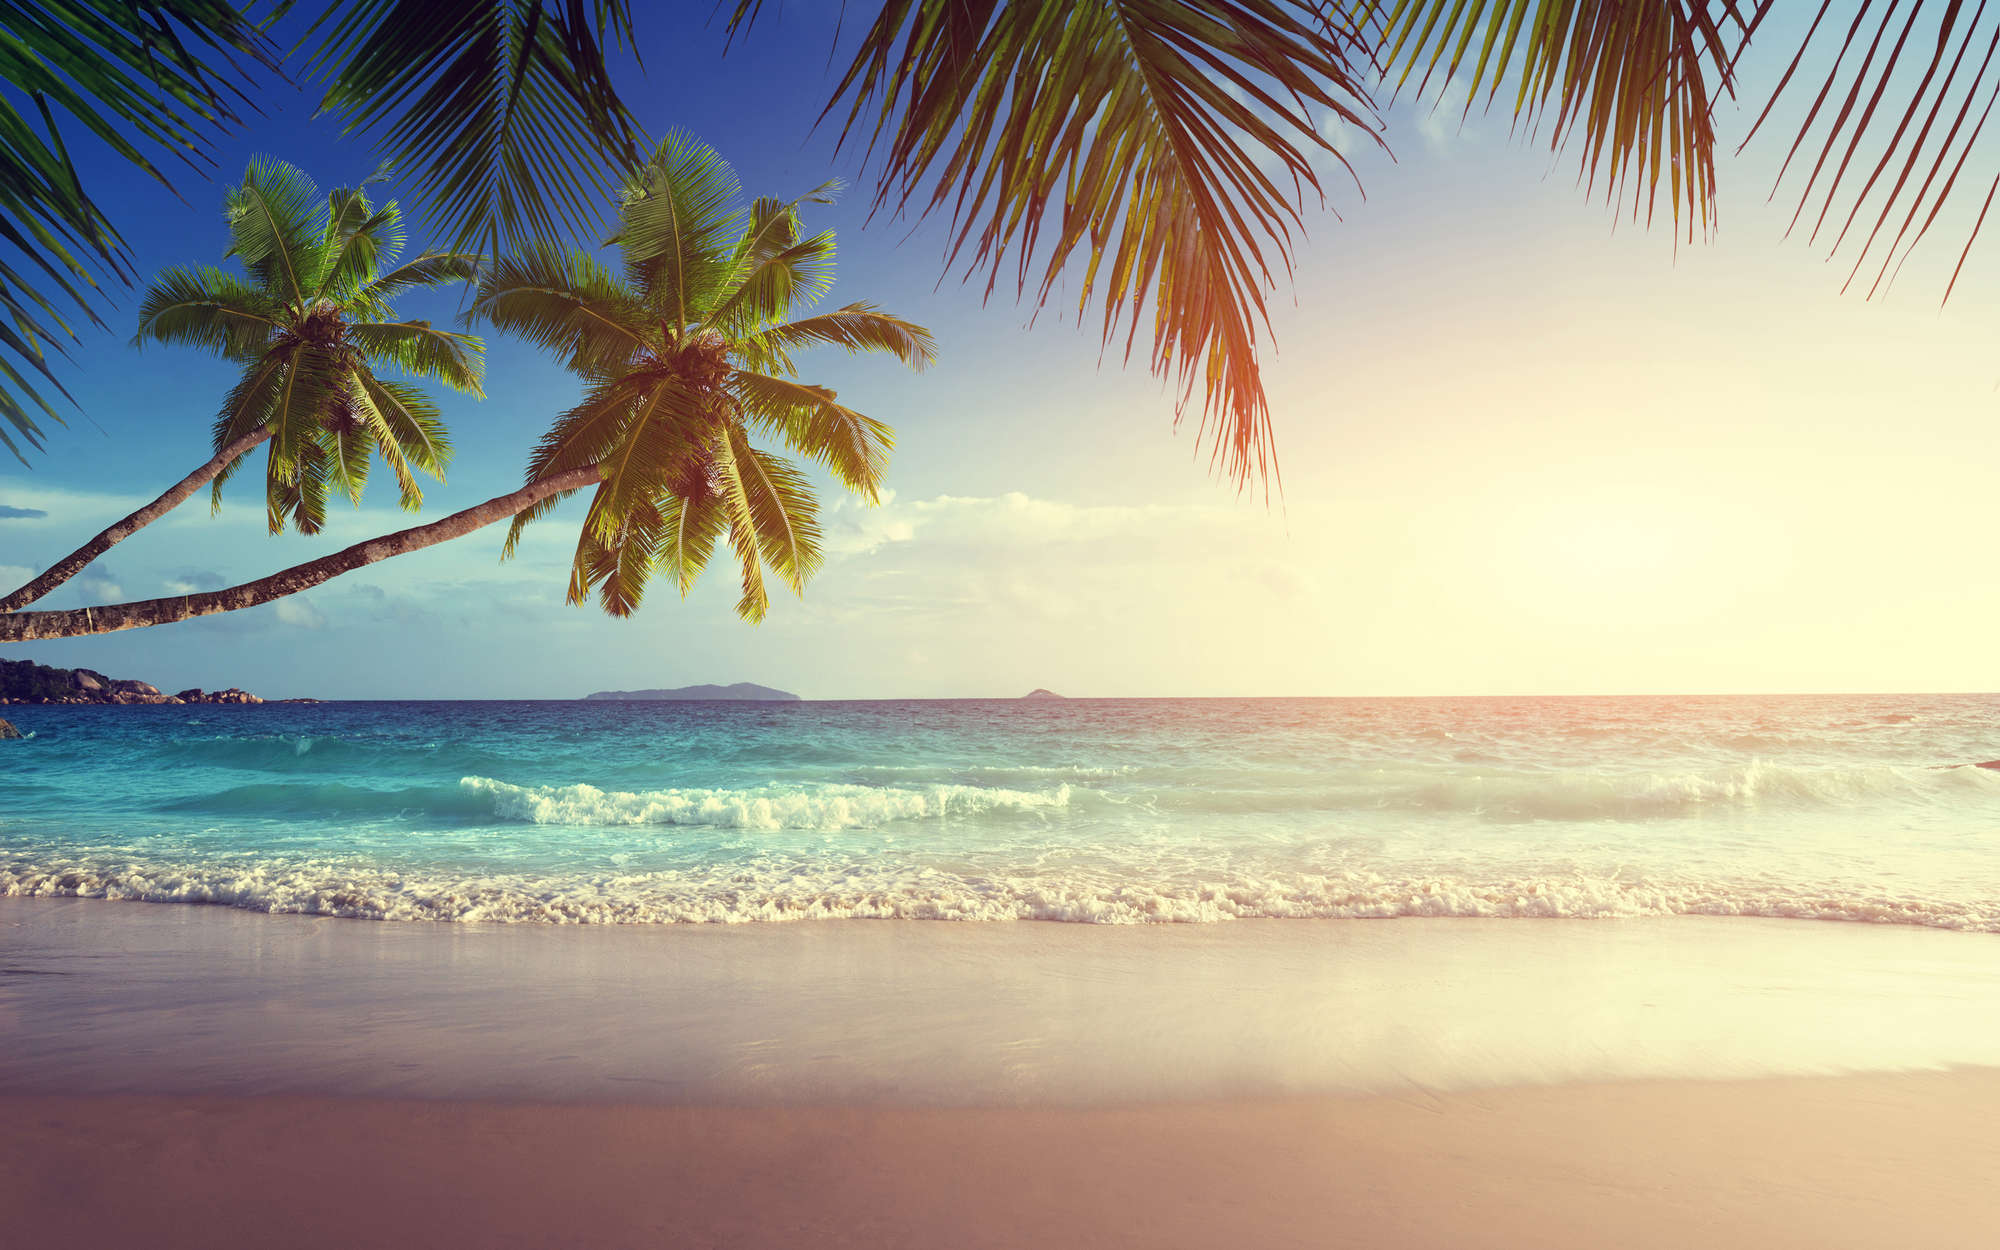             Fotomural Seychelles con palmeras - tejido no tejido liso de alta calidad
        